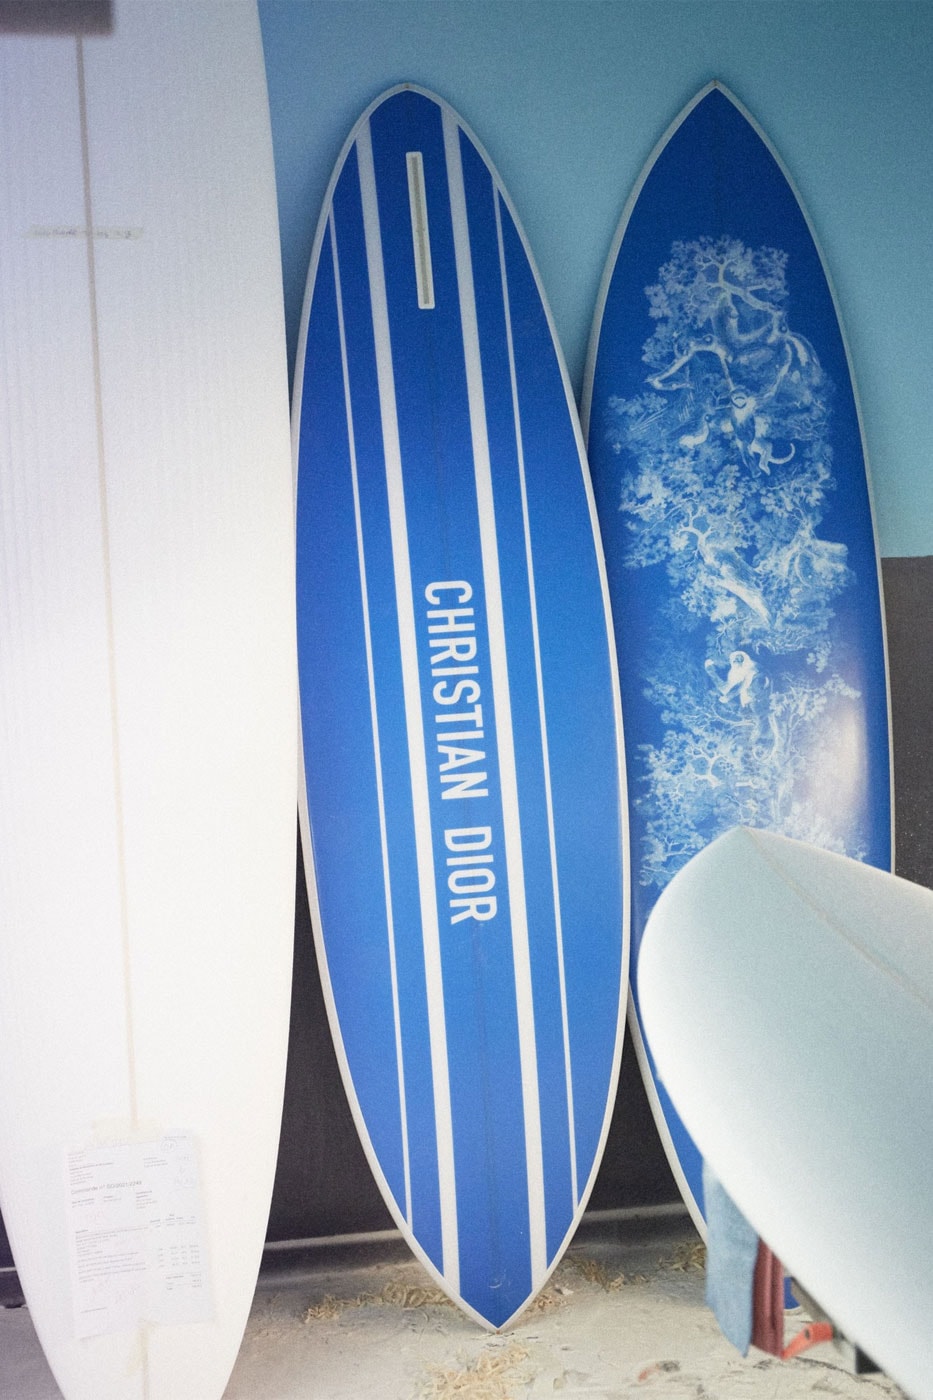 Dior Surfboard Dioriviera Capsule Collection Toile de Jouy Release Price